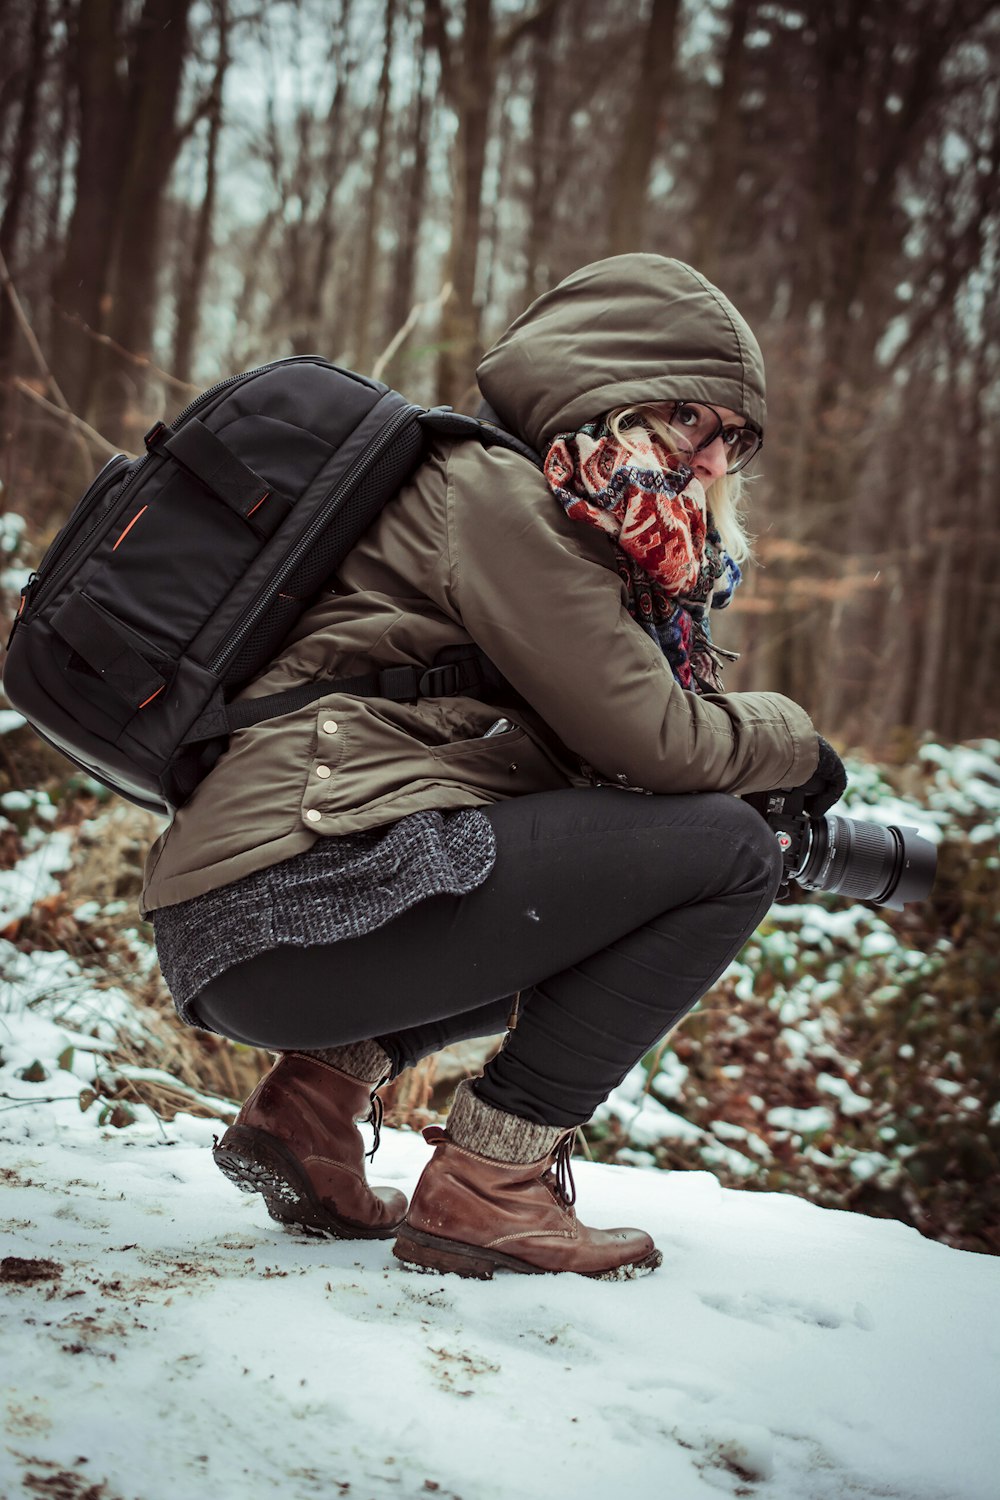 日中、雪に覆われた地面にしゃがみながらカメラを構える茶色のフード付きジャケットを着た女性